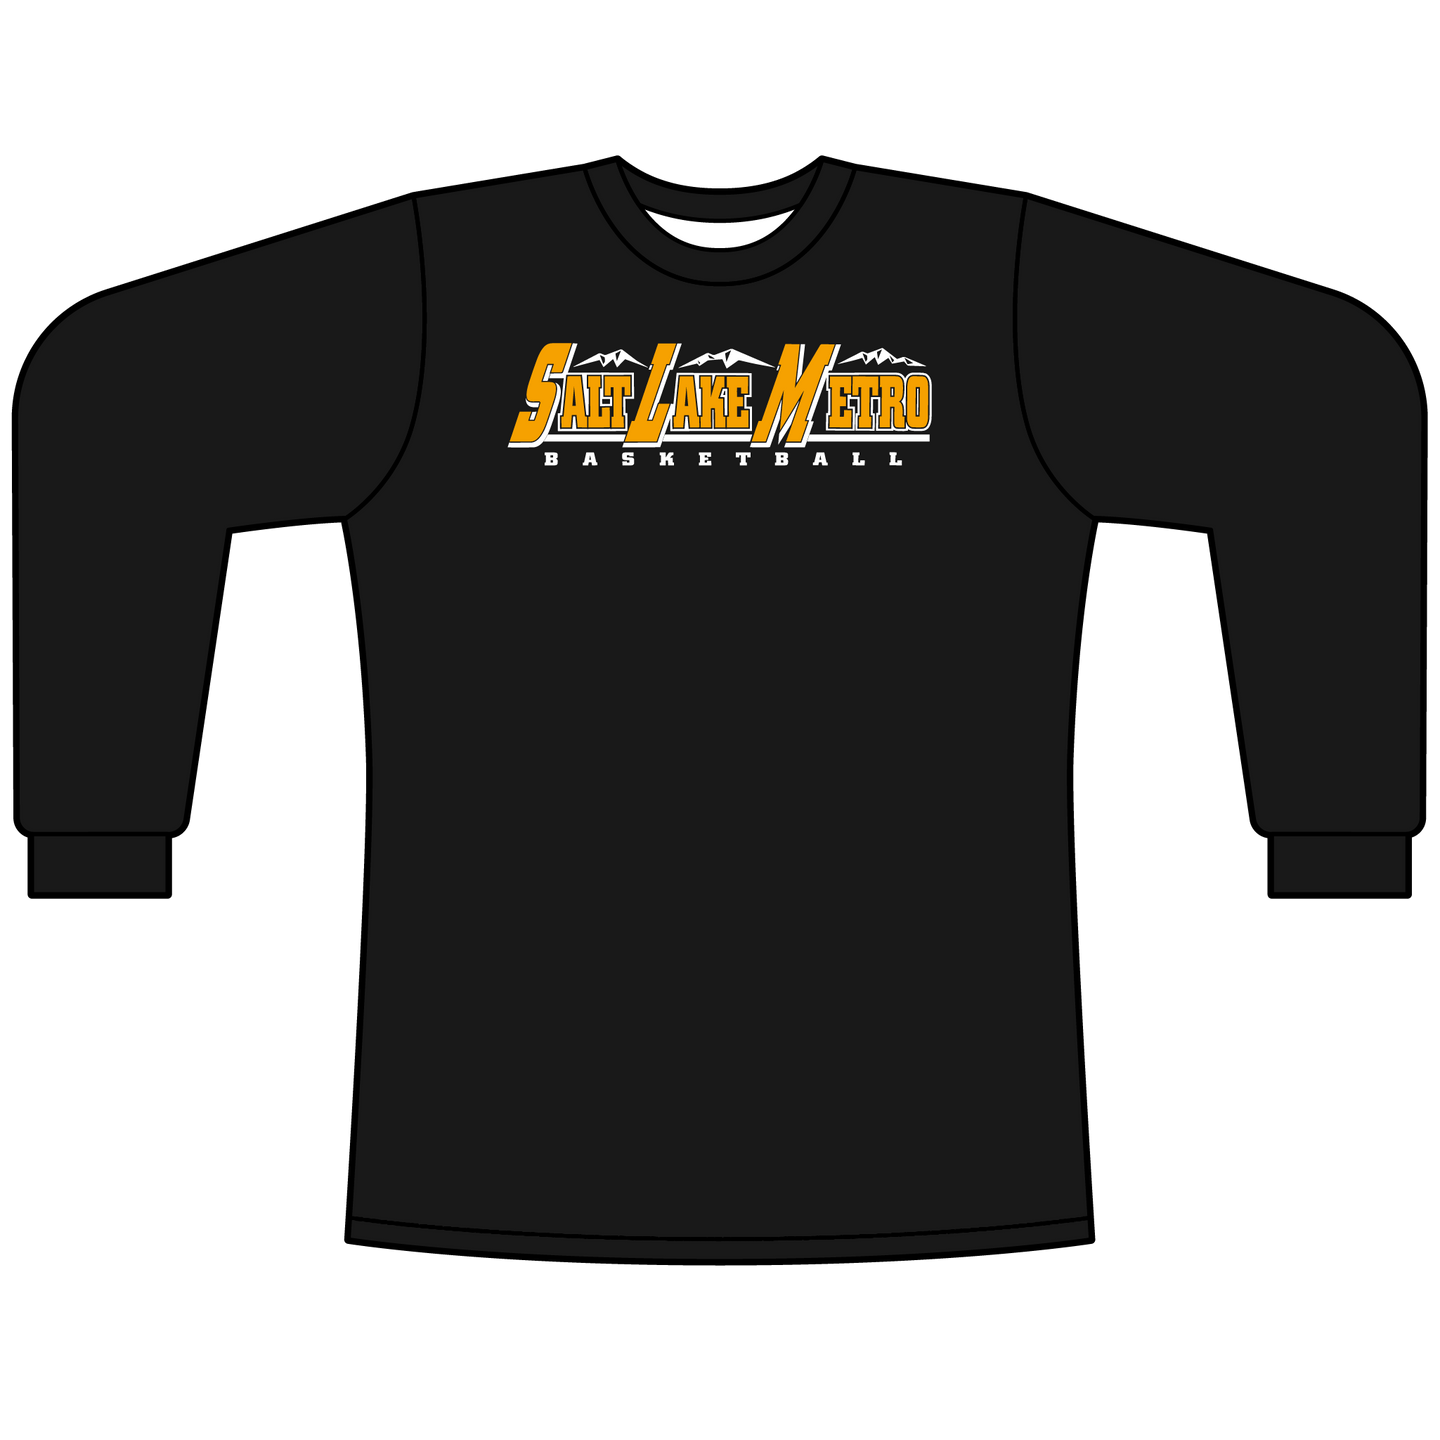 Men's Black Salt Lake Metro Long Sleeve College Alumni Performance Shirt